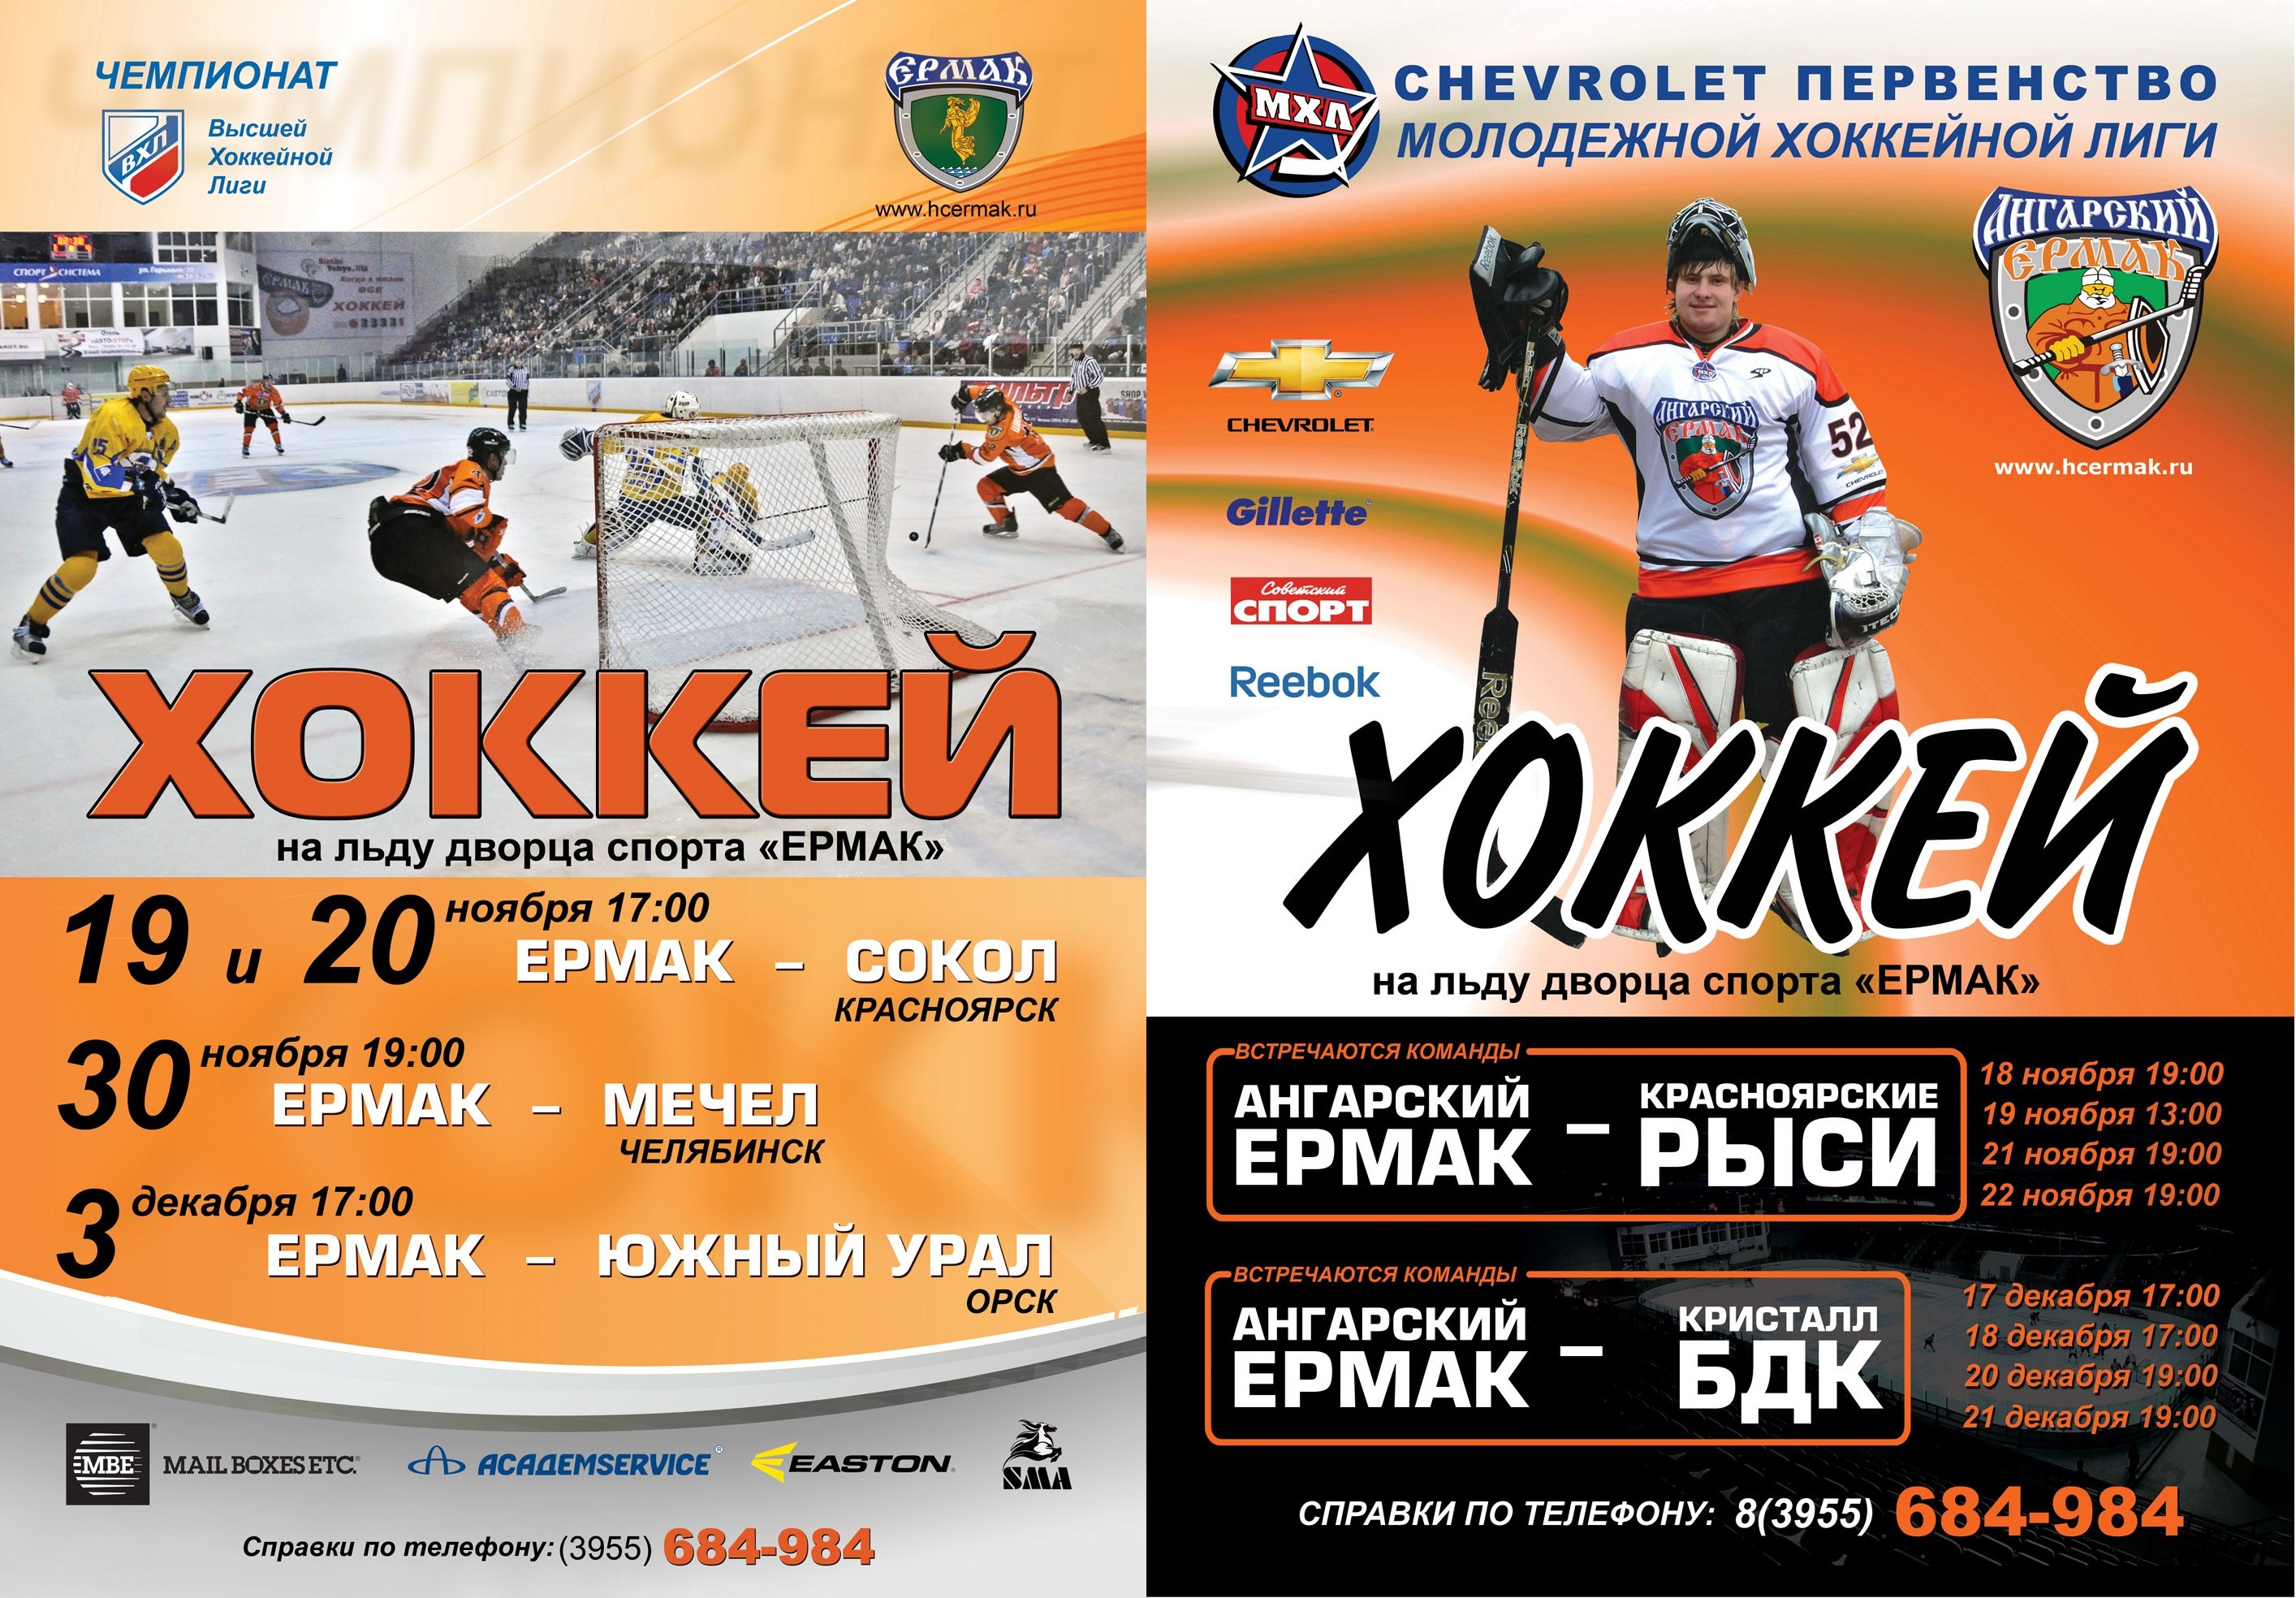 Мхл календарь игр. Ангарск хоккей.